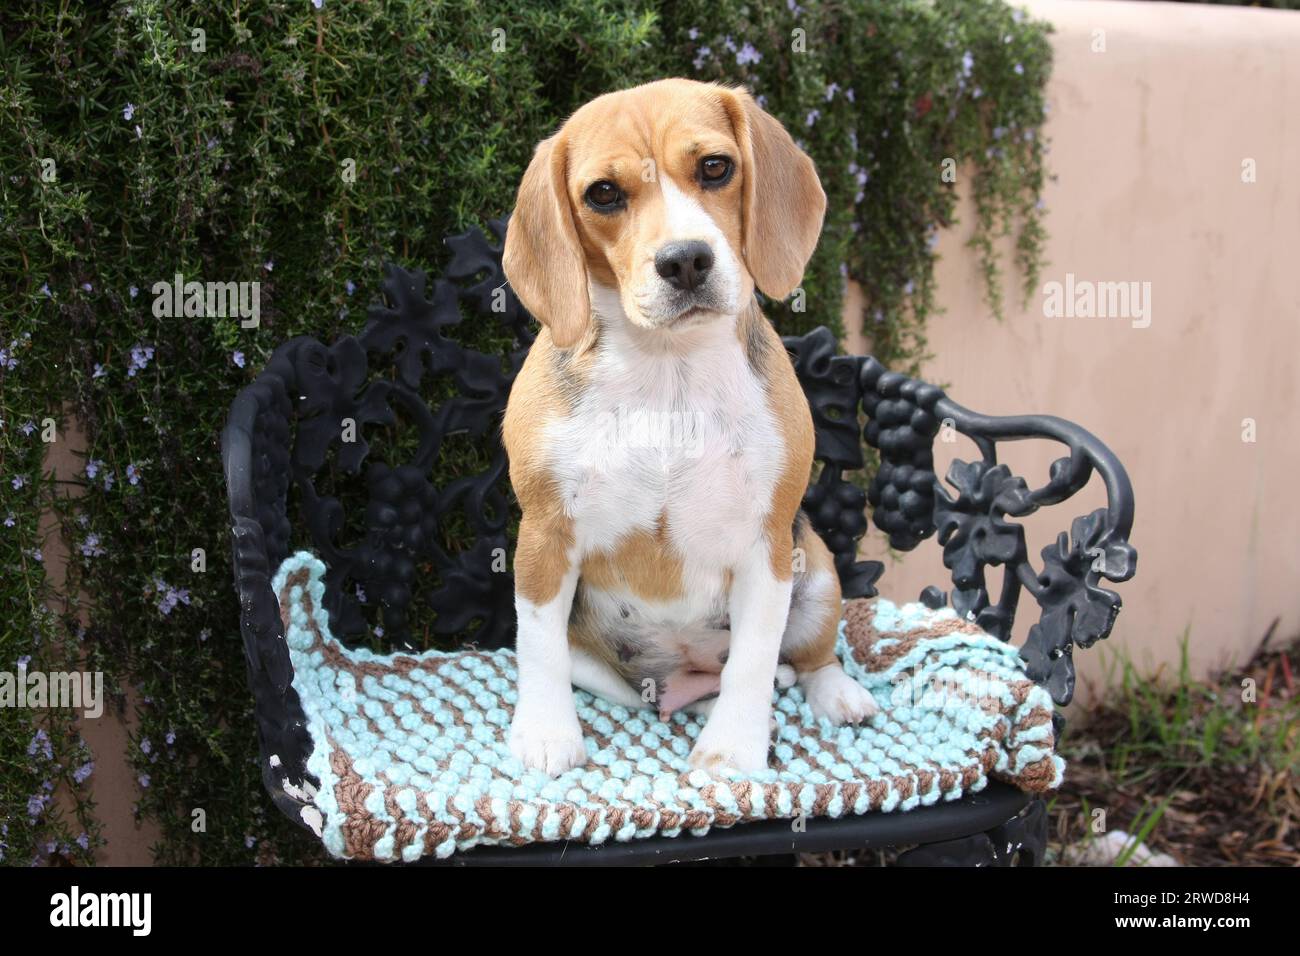 Beagle seduto su una sedia in ferro battuto con imbottitura davanti a un muro con vegetazione Foto Stock